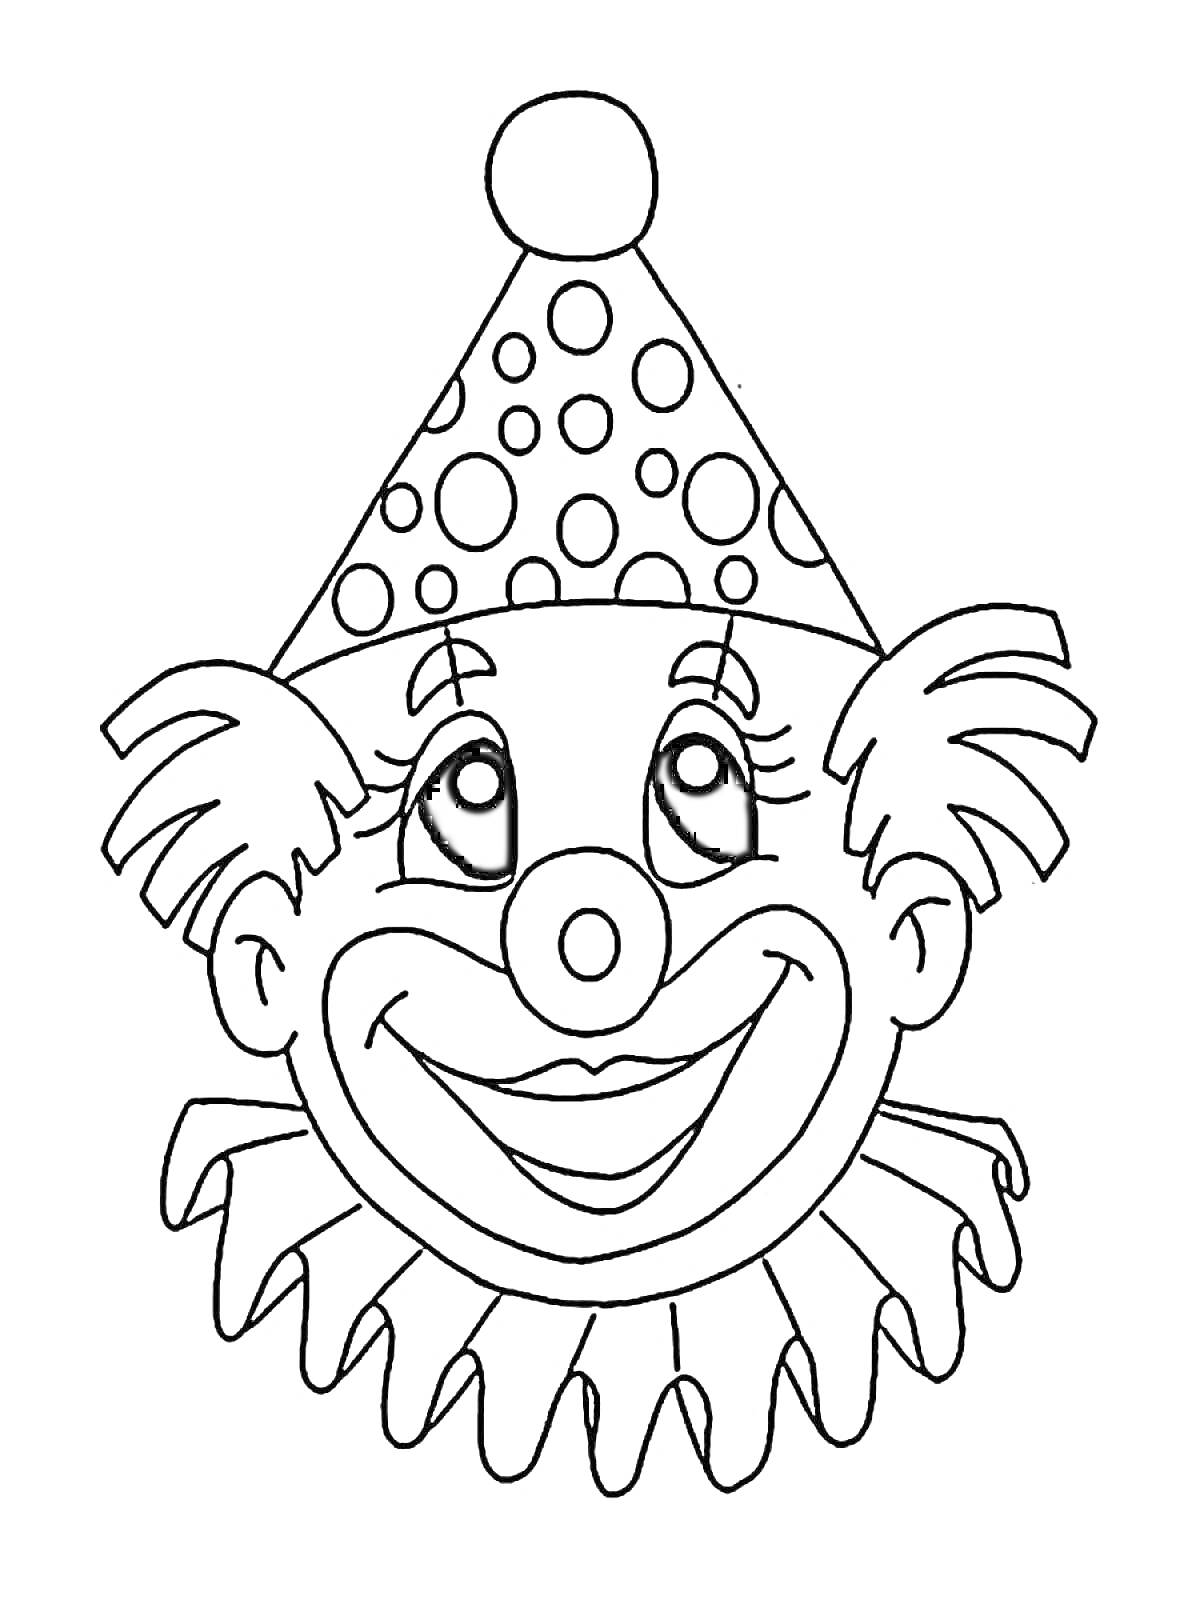 Раскраска Клоун в колпаке с бубоном, кружочками на колпаке, ресницами, носом-пуговицей и воротником-оборкой